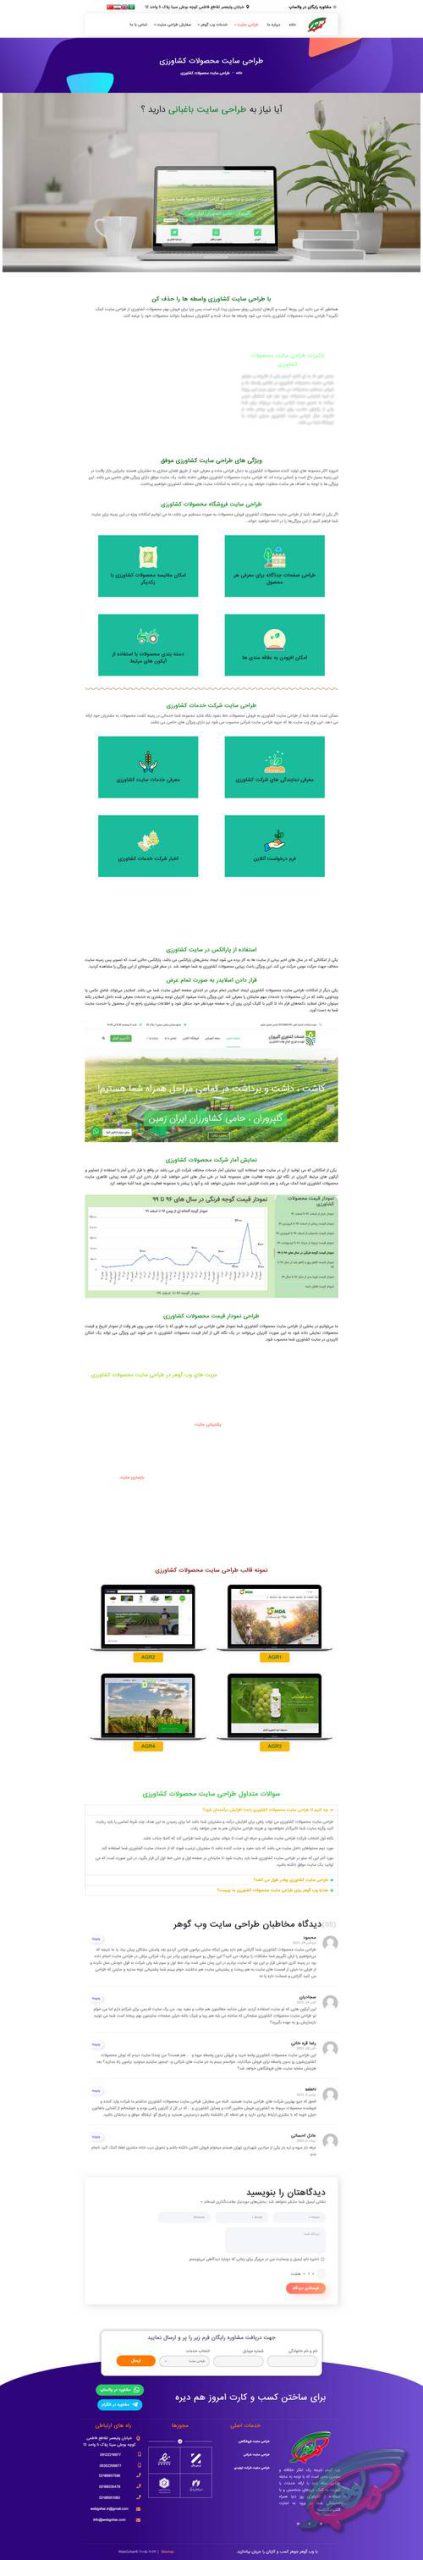 سایت کشاورزی از نمونه طراحی سایت شرکتی